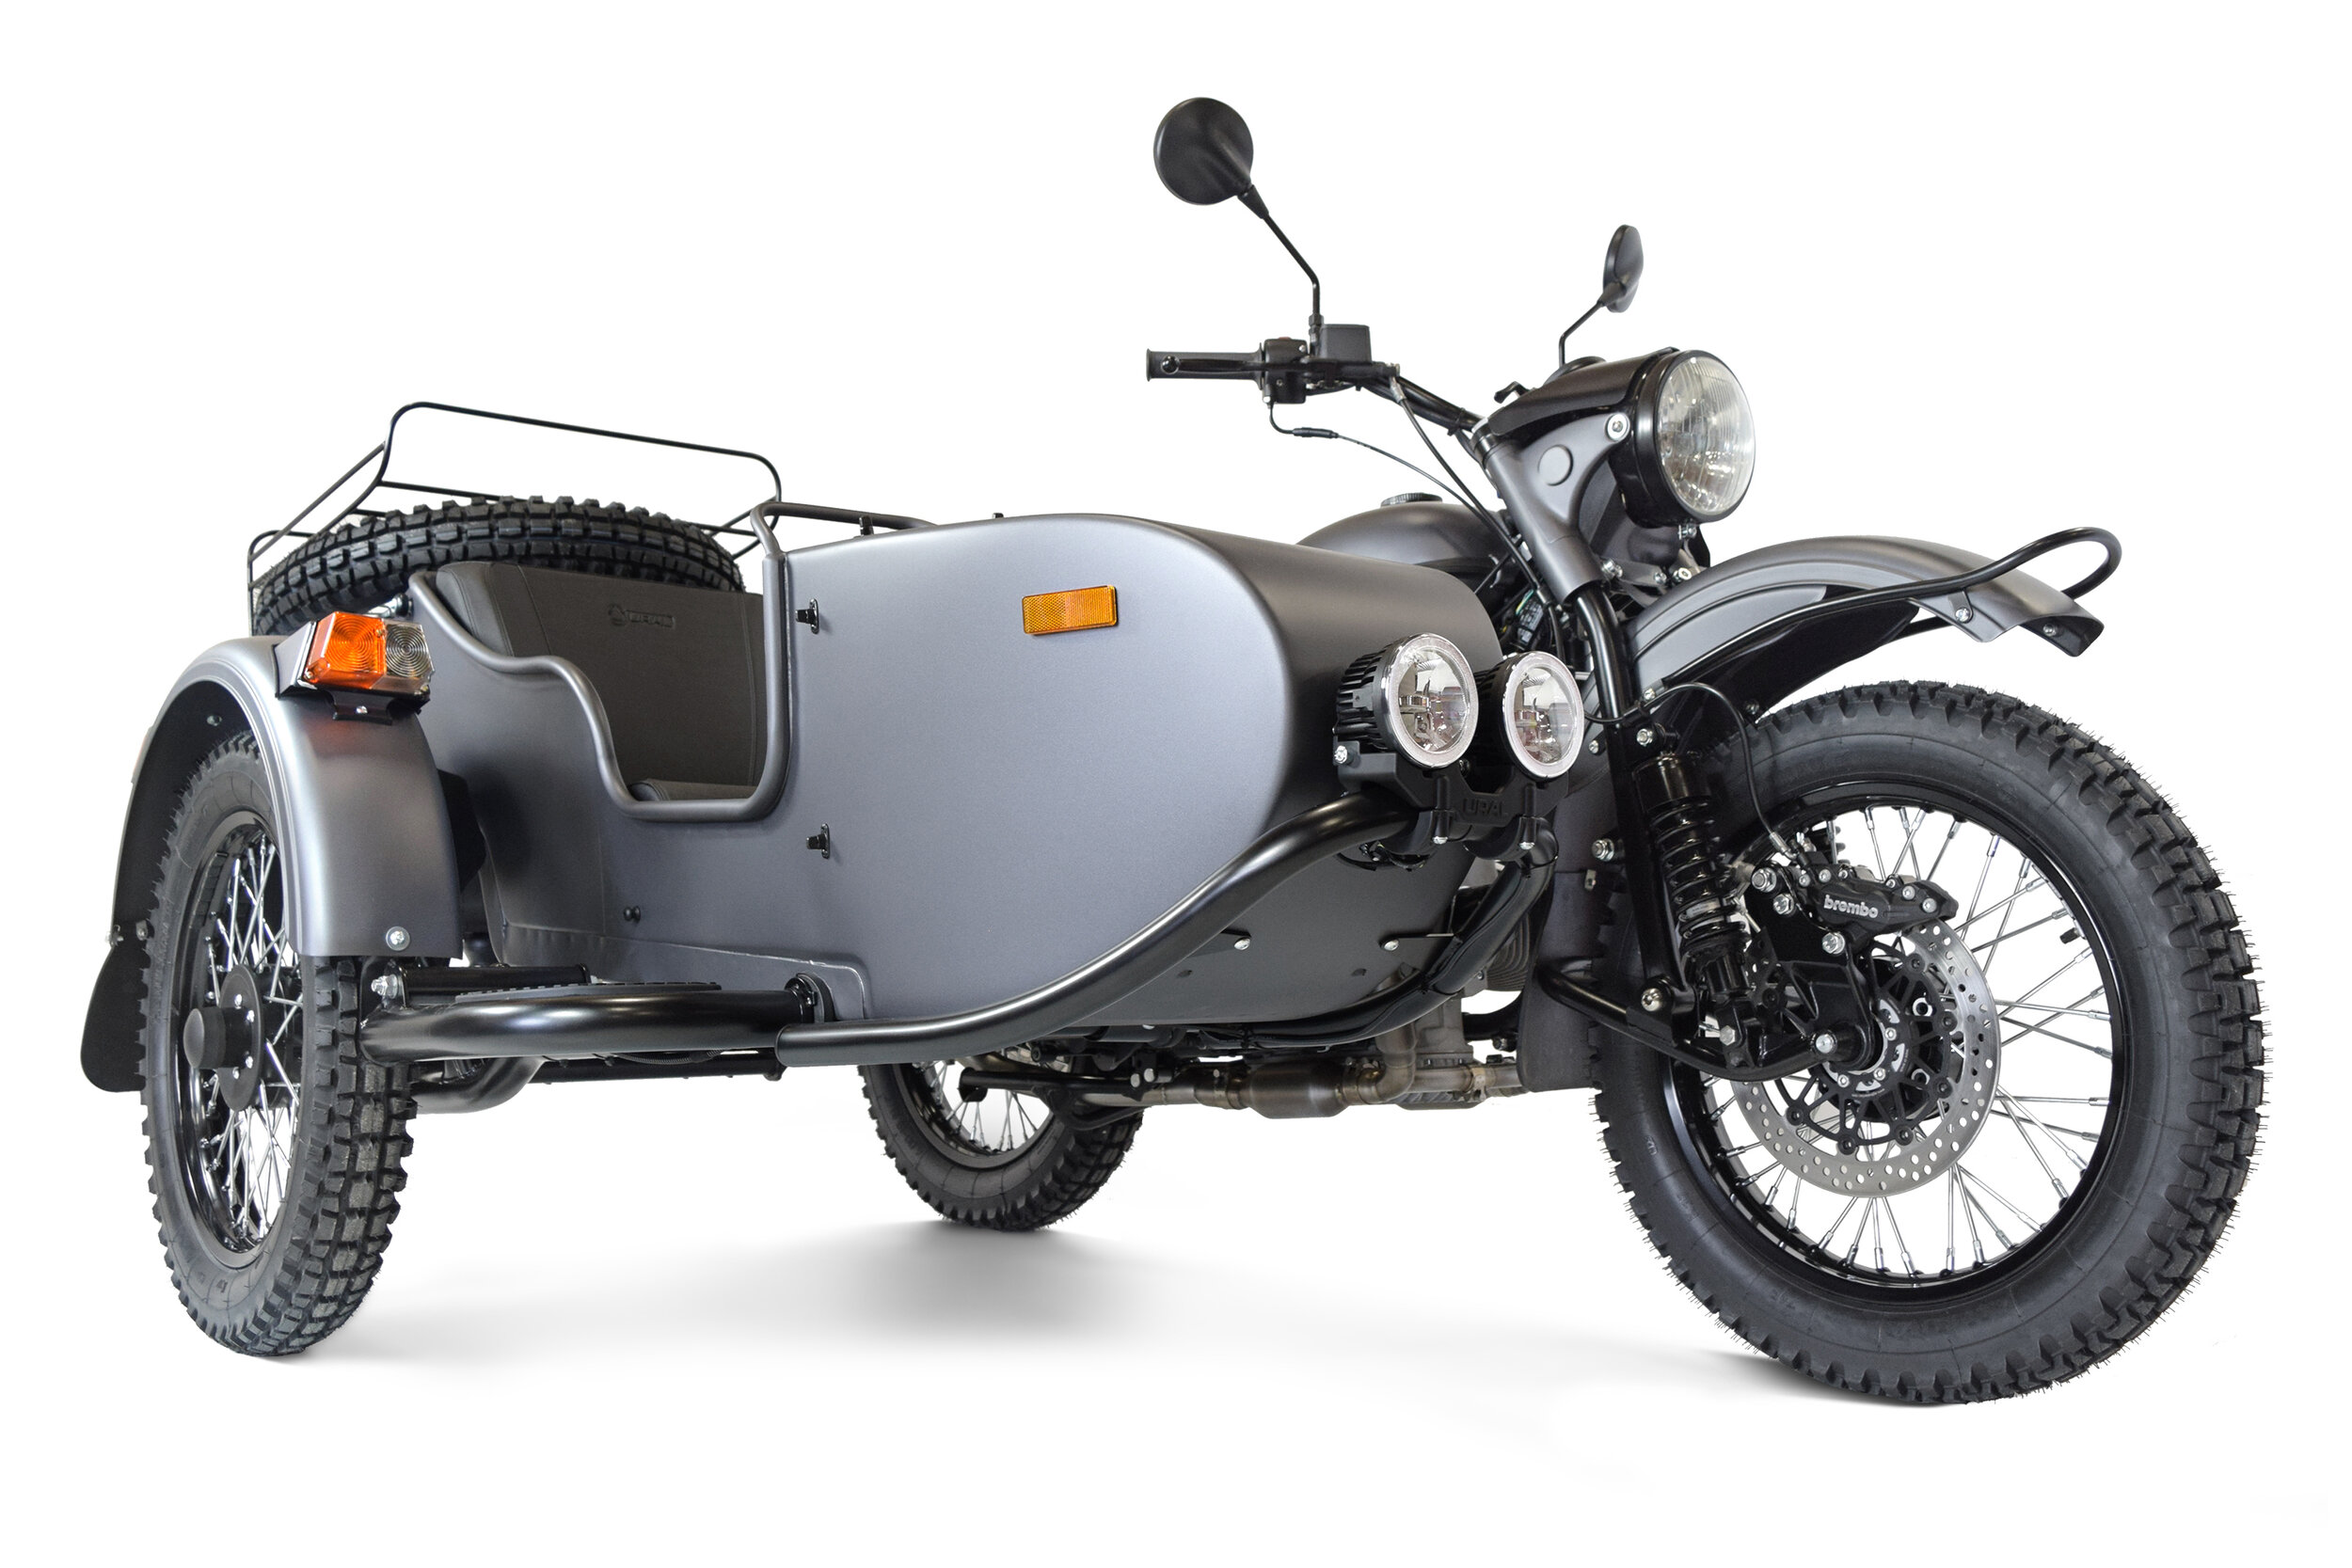 Ural Motorcycle